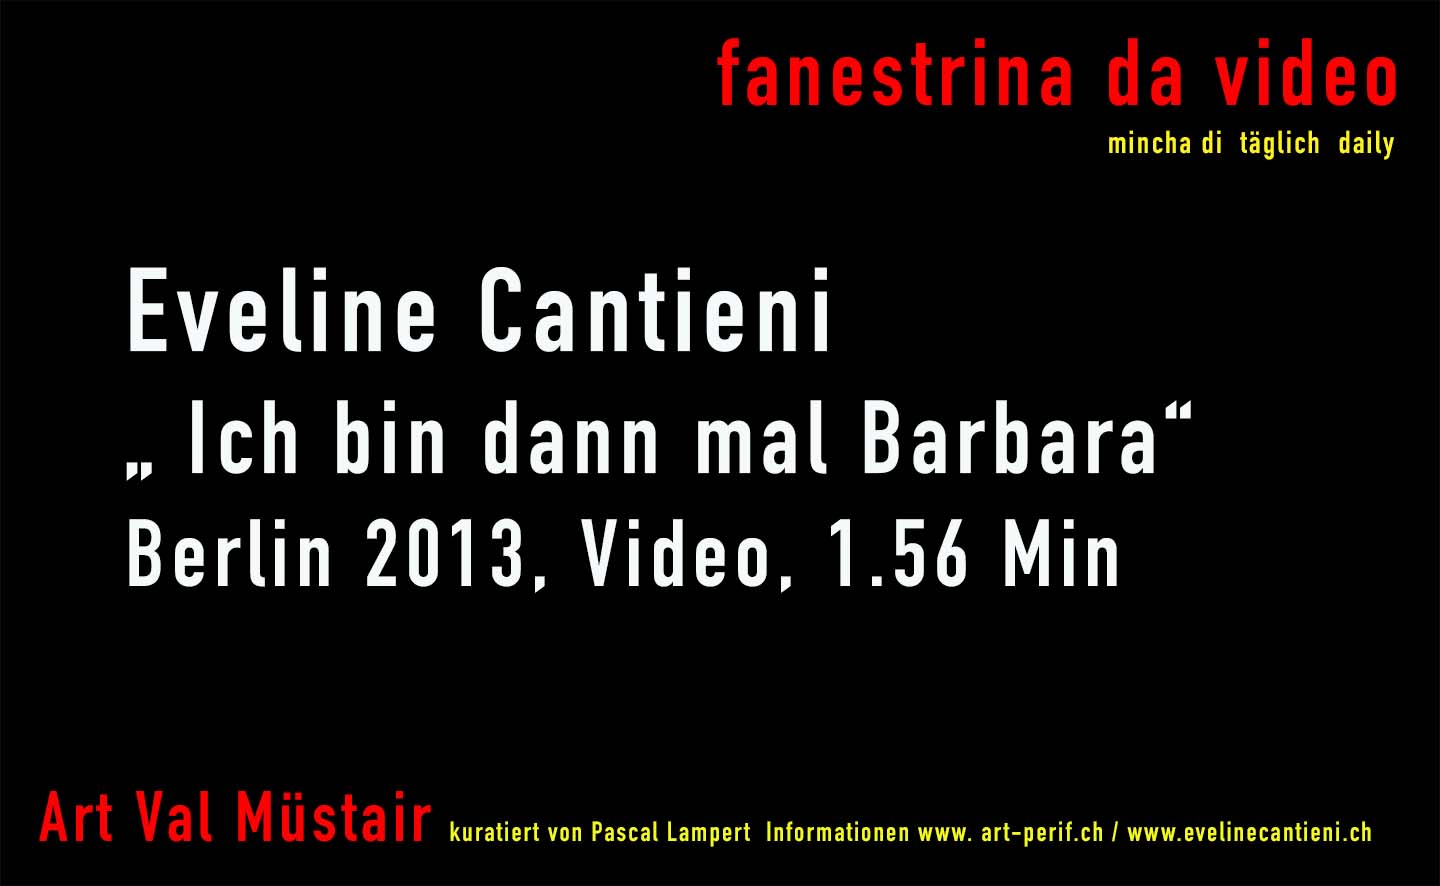 Fanestrina da Video Eveline Cantieni